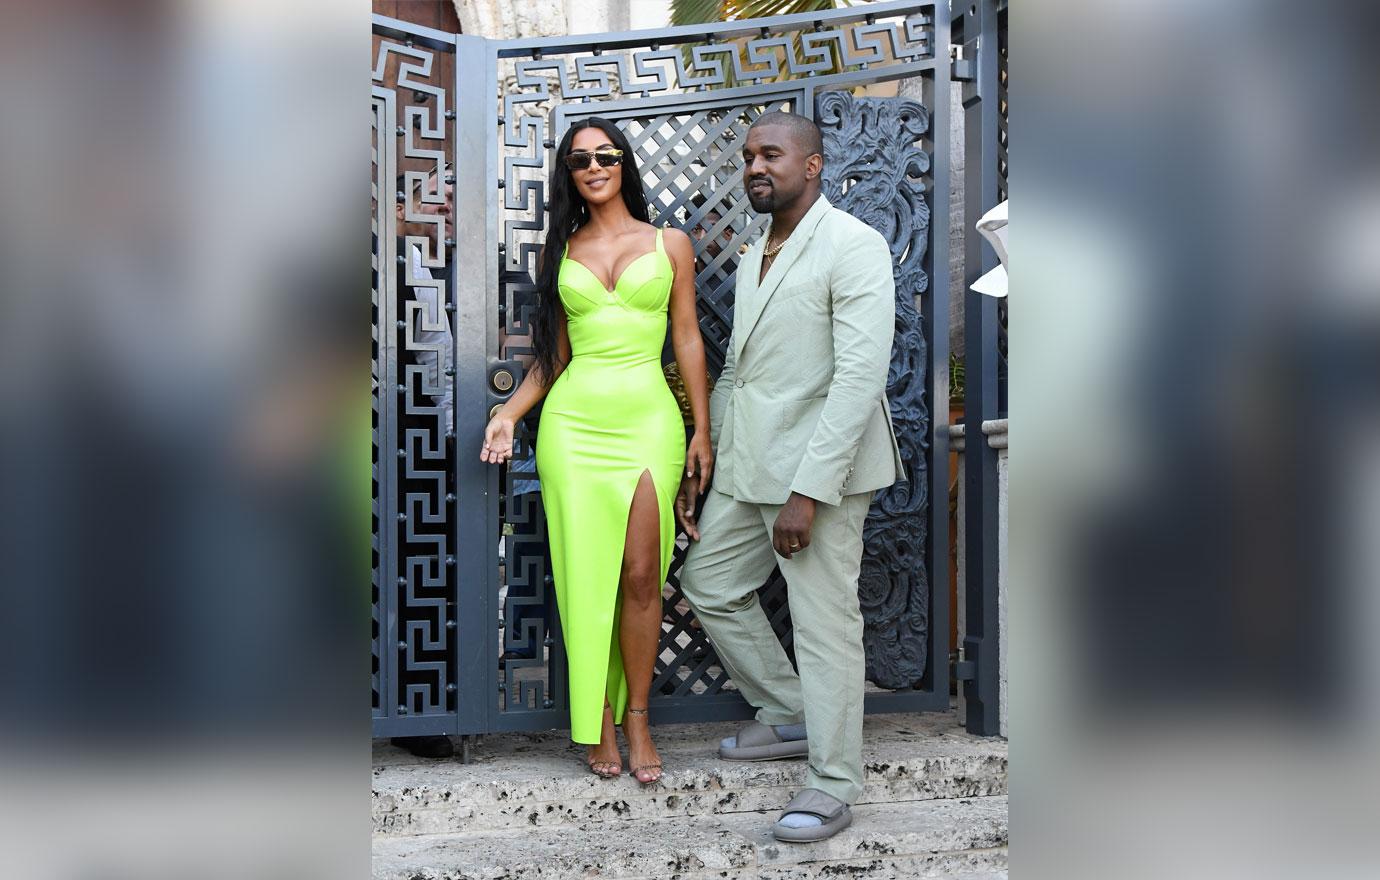 Kim Kardashian & Kanye West Step Out in Style for 2 Chainz's Wedding in  Miami: Photo 4130758, Kanye West, Kim Kardashian Photos